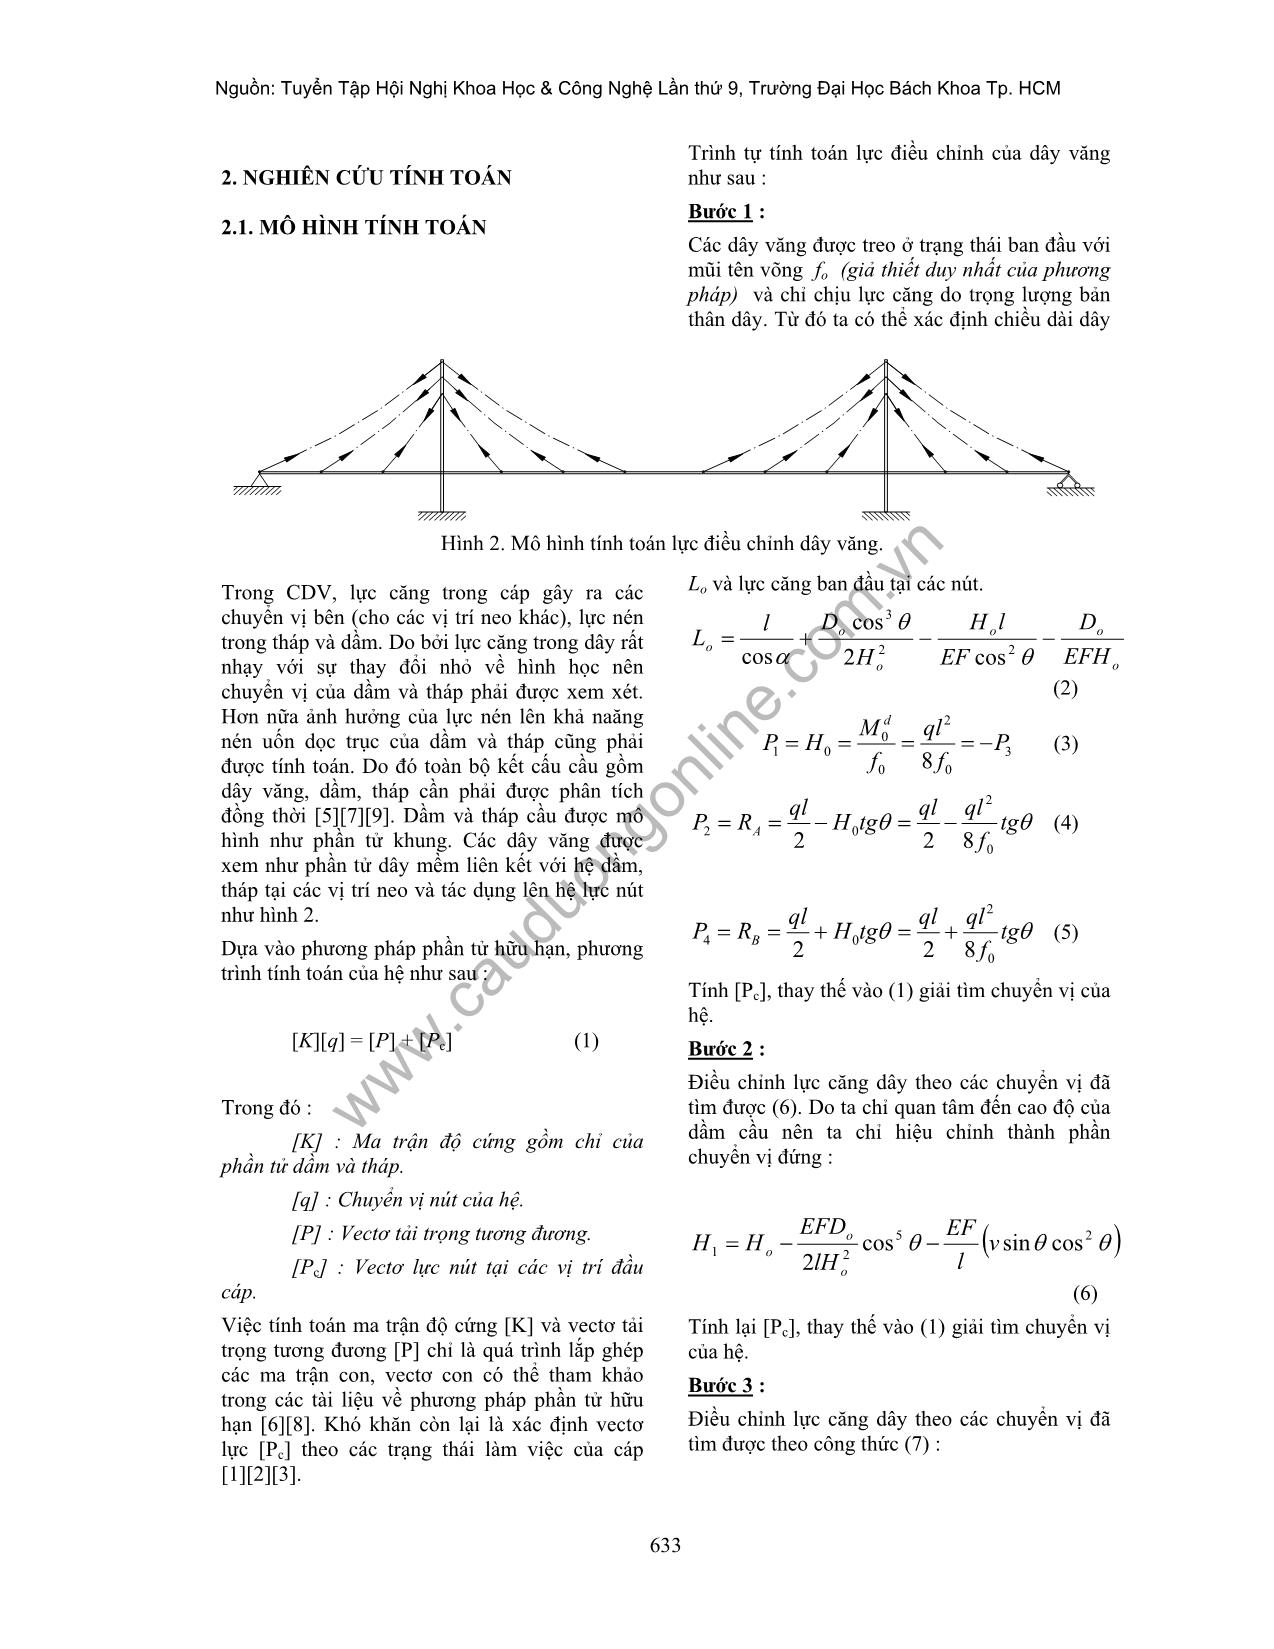 Phân tích tính toán điều chỉnh nội lực cầu dây văng trang 2